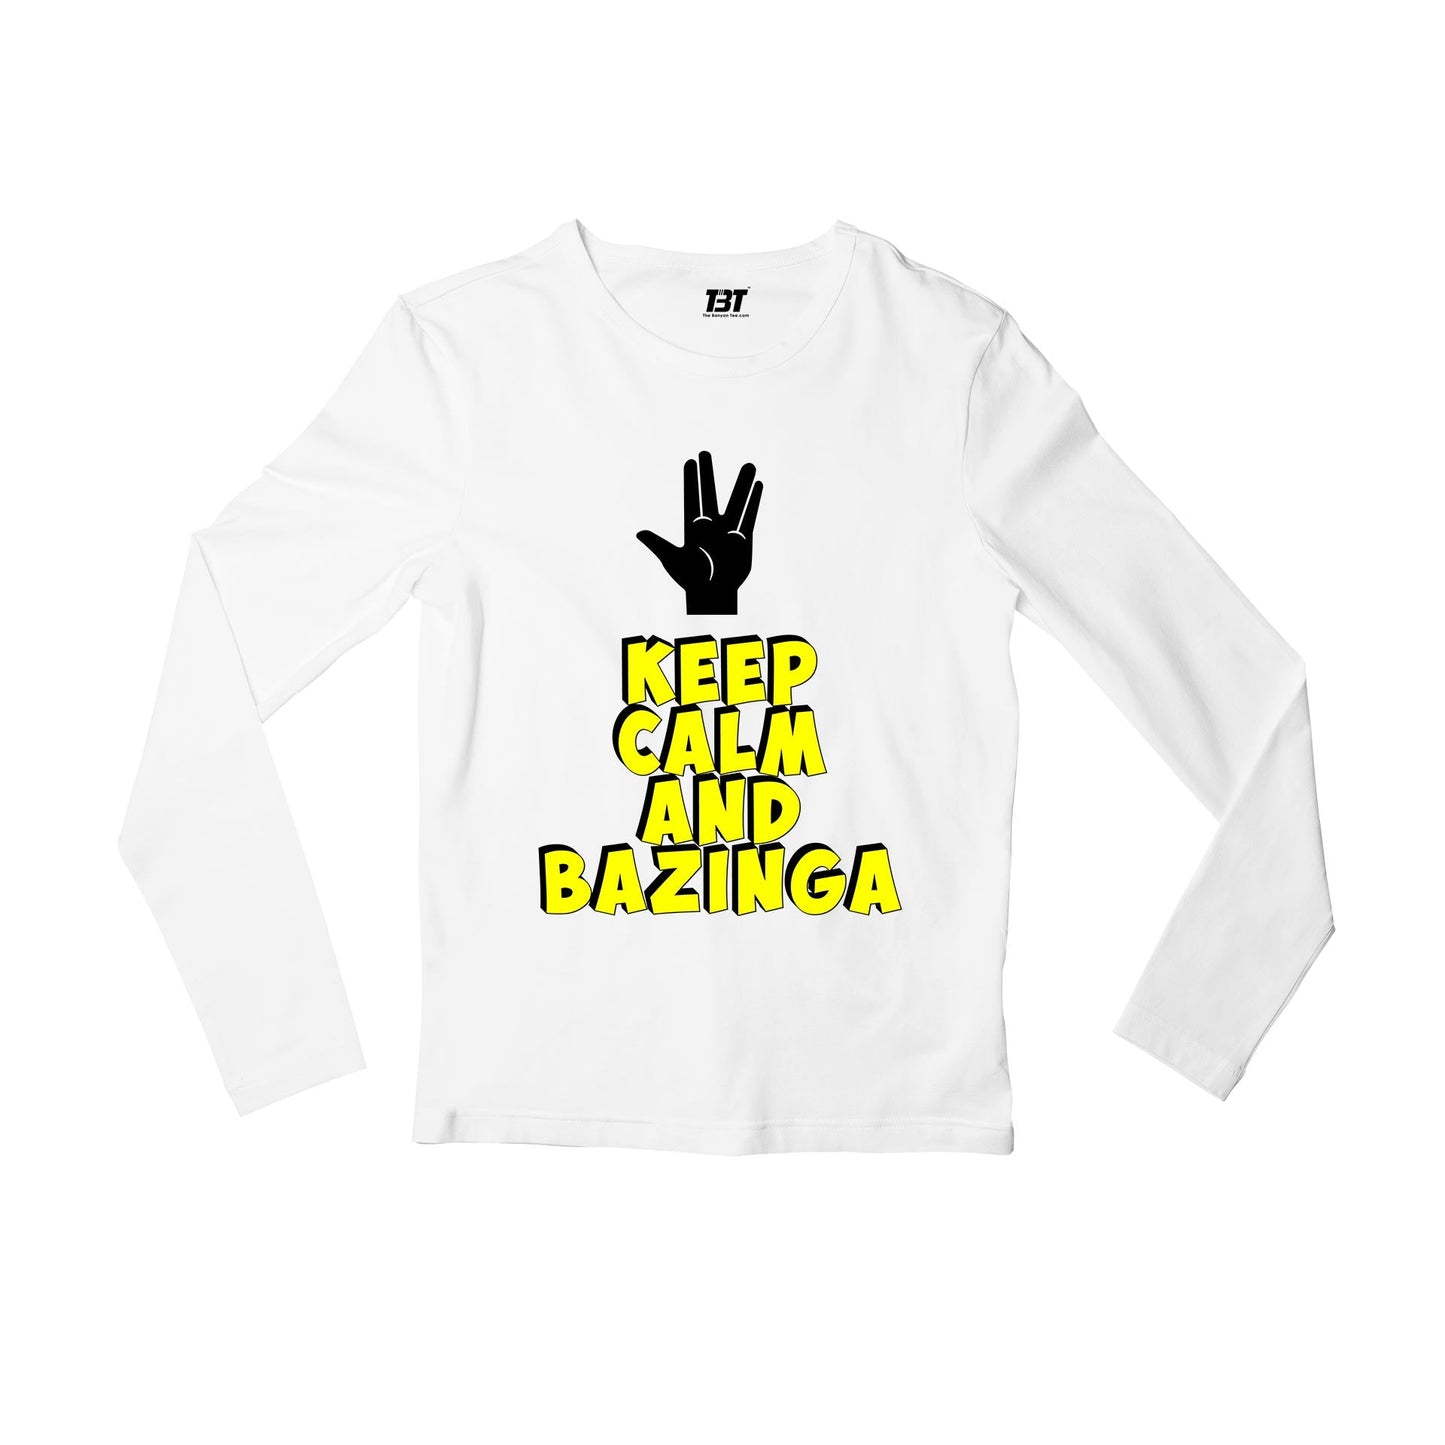 The Big Bang Theory Full Sleeves T-shirt Full Sleeves T-shirt The Banyan Tee TBT